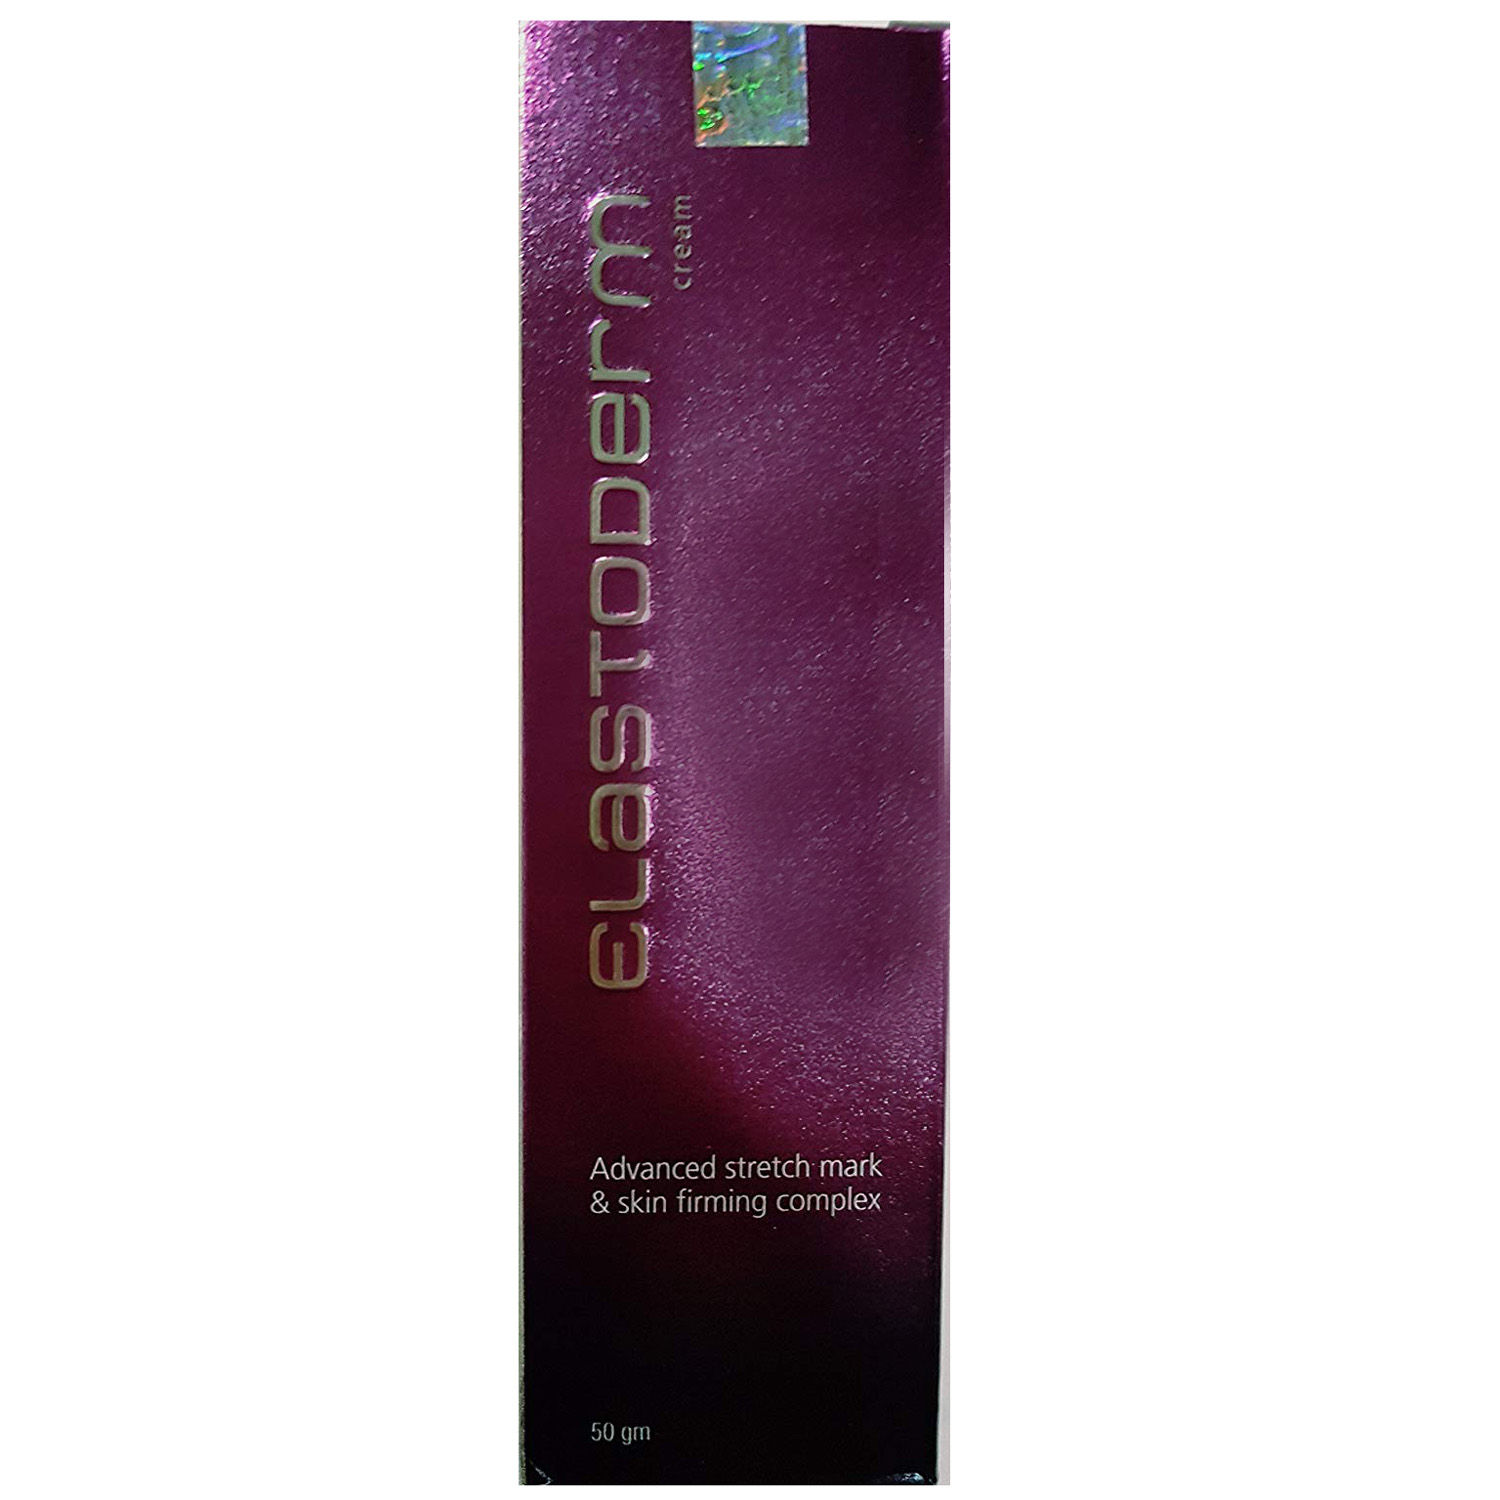 Elastoderm Cream, 50 gm, Pack of 1 